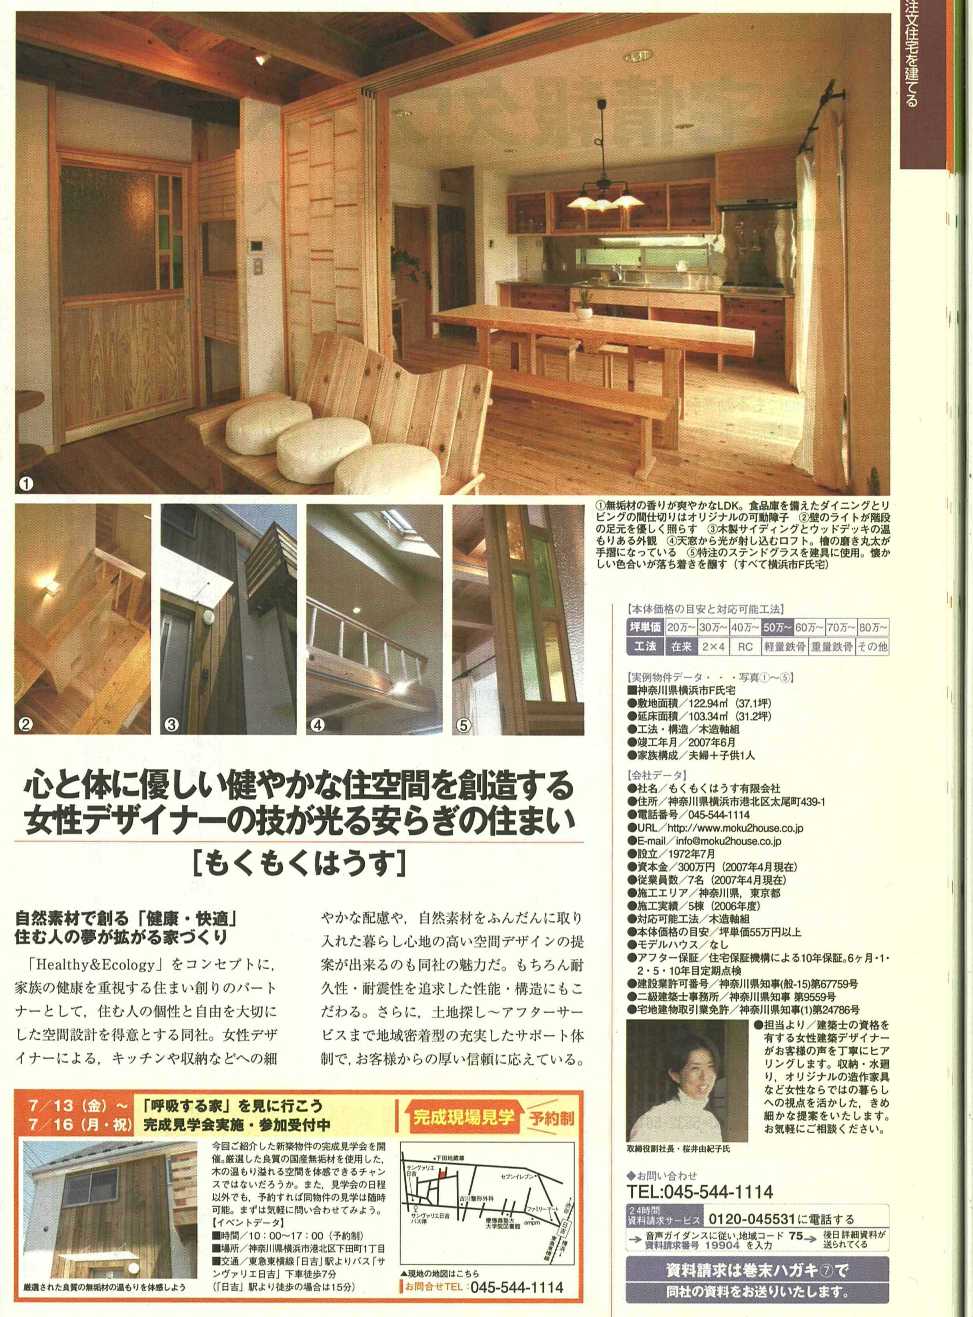 「神奈川で家を建てる」の掲載